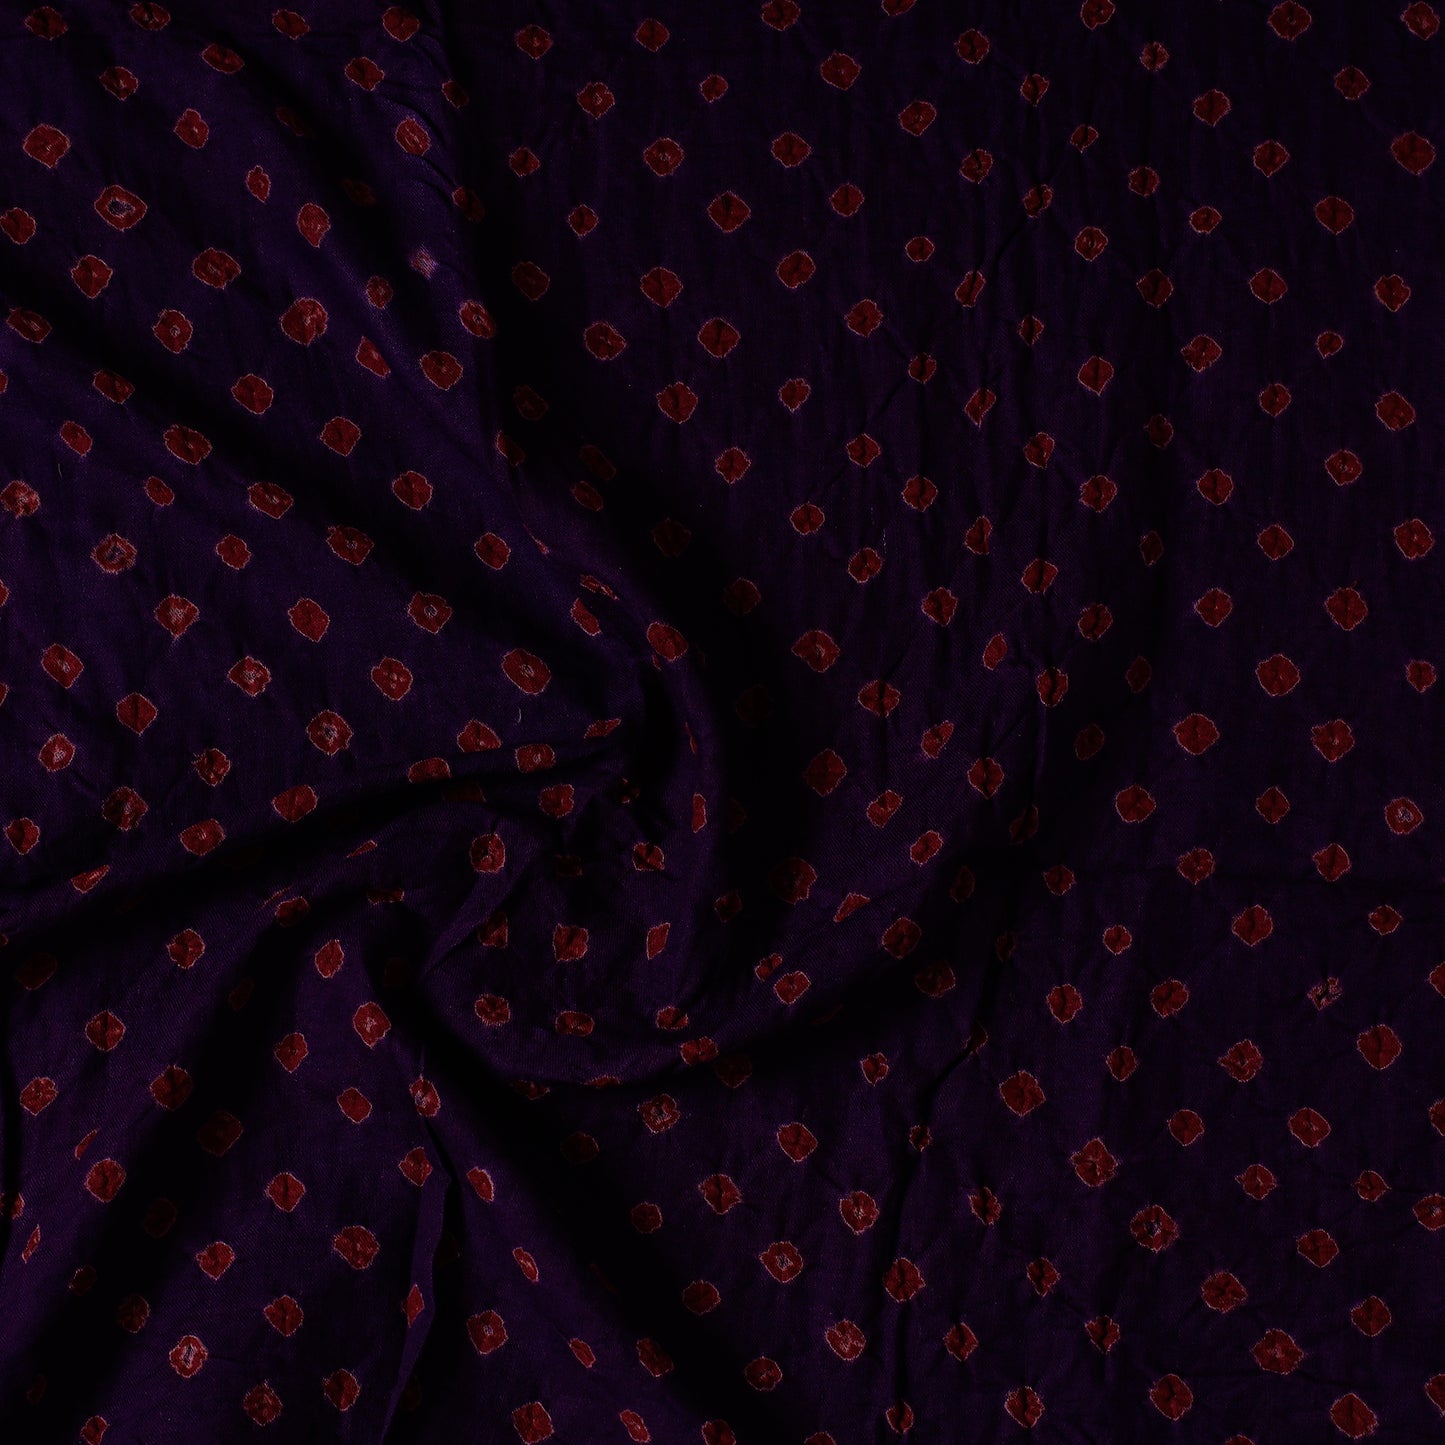 Black - Kutch Bandhani Tie-Dye Cotton Precut Fabric (0.8 meter) 07